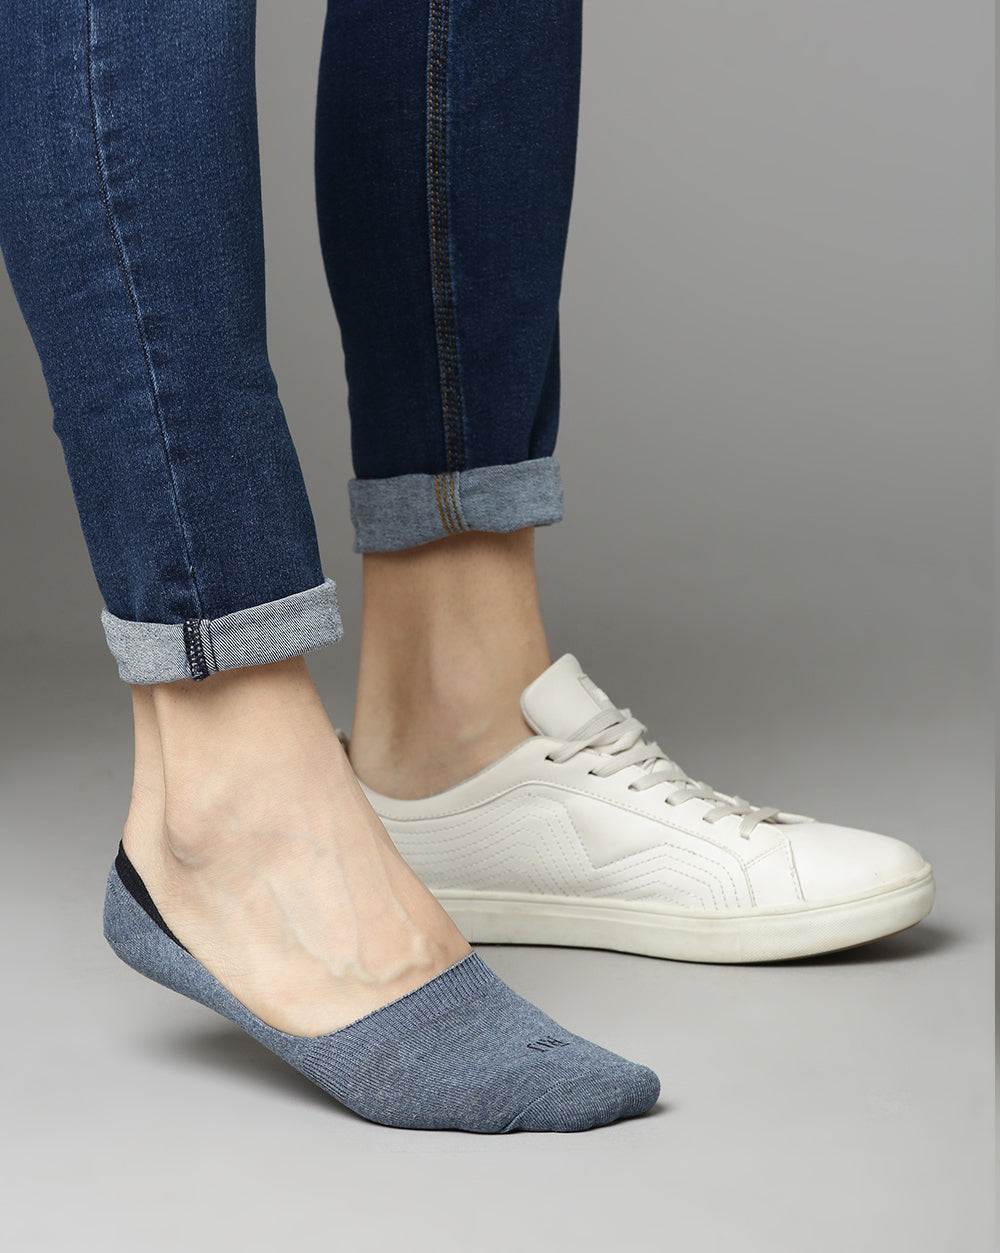 Loafer Socks - Blue/Grey